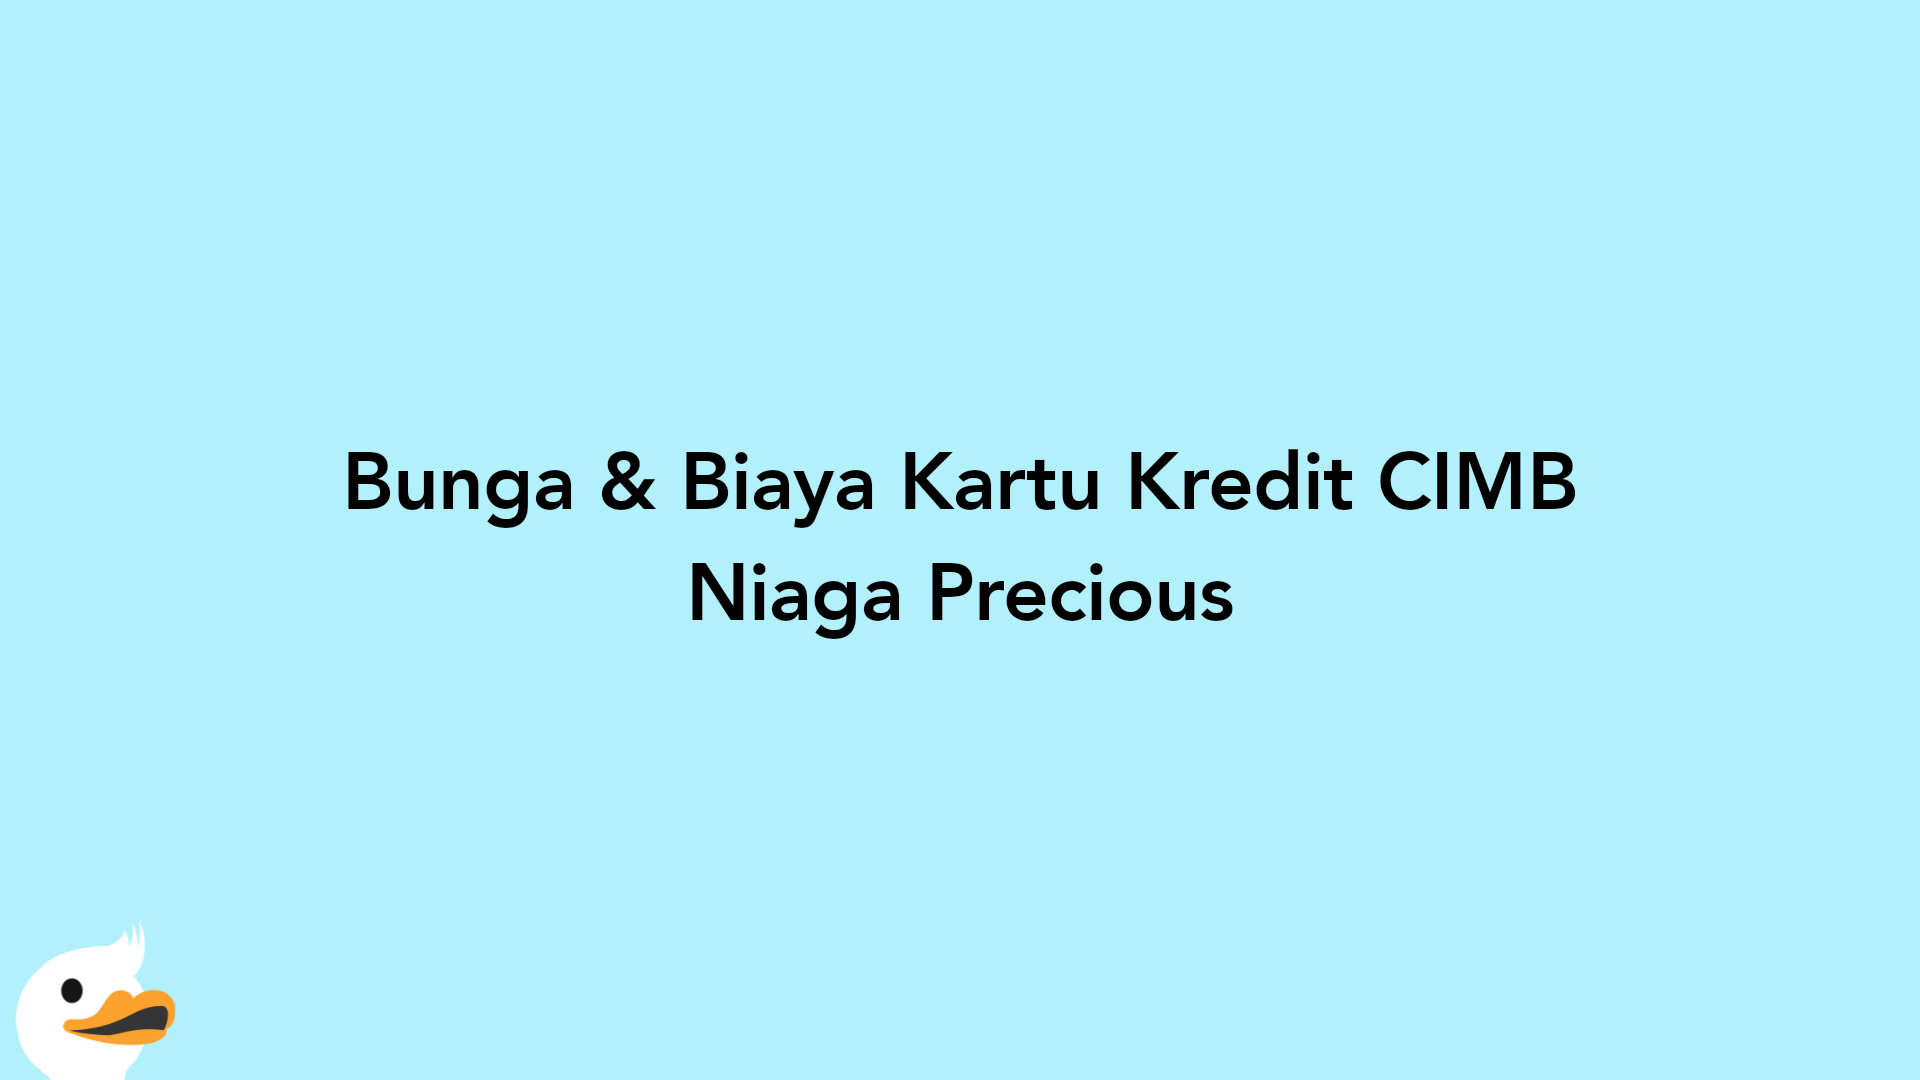 Bunga & Biaya Kartu Kredit CIMB Niaga Precious